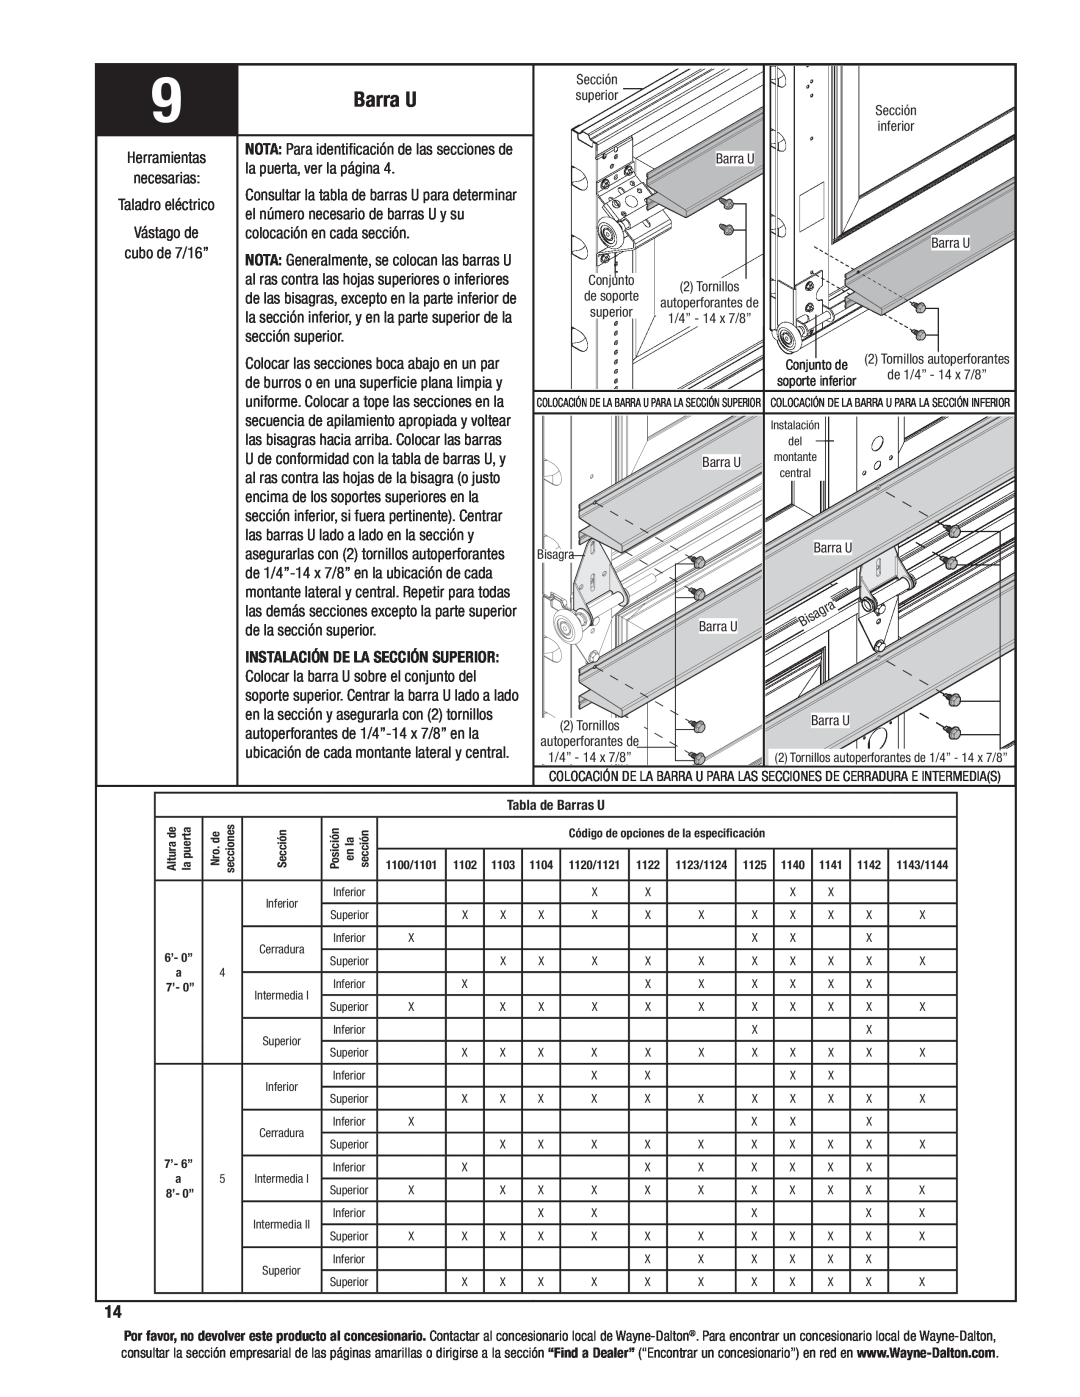 Wayne-Dalton 8200, 8000, 8100 manual Barra U, Taladro eléctrico, la puerta, ver la página, sección superior 